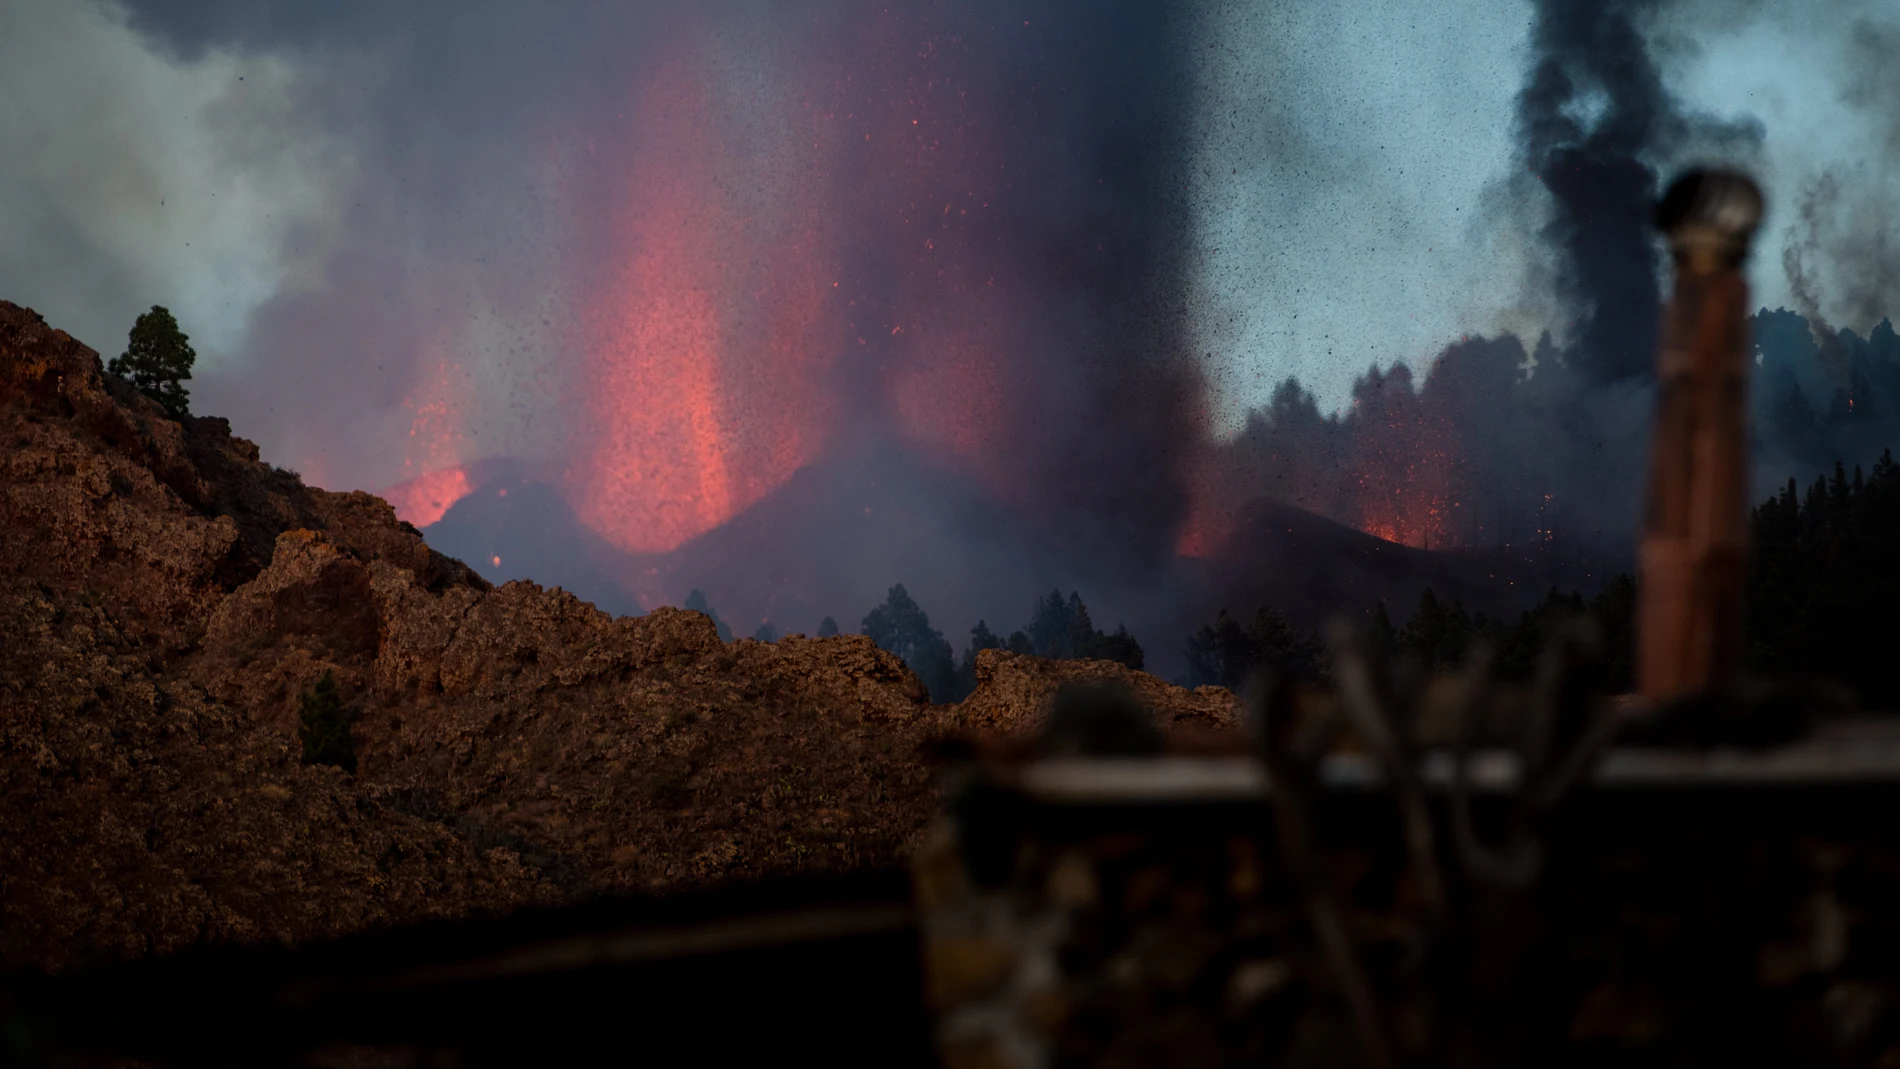 Lava, humo y cenizas expulsadas durante la erupción volcánica de este domingo en el parque natural de Cumbre Vieja de La Palma (Islas Canarias)